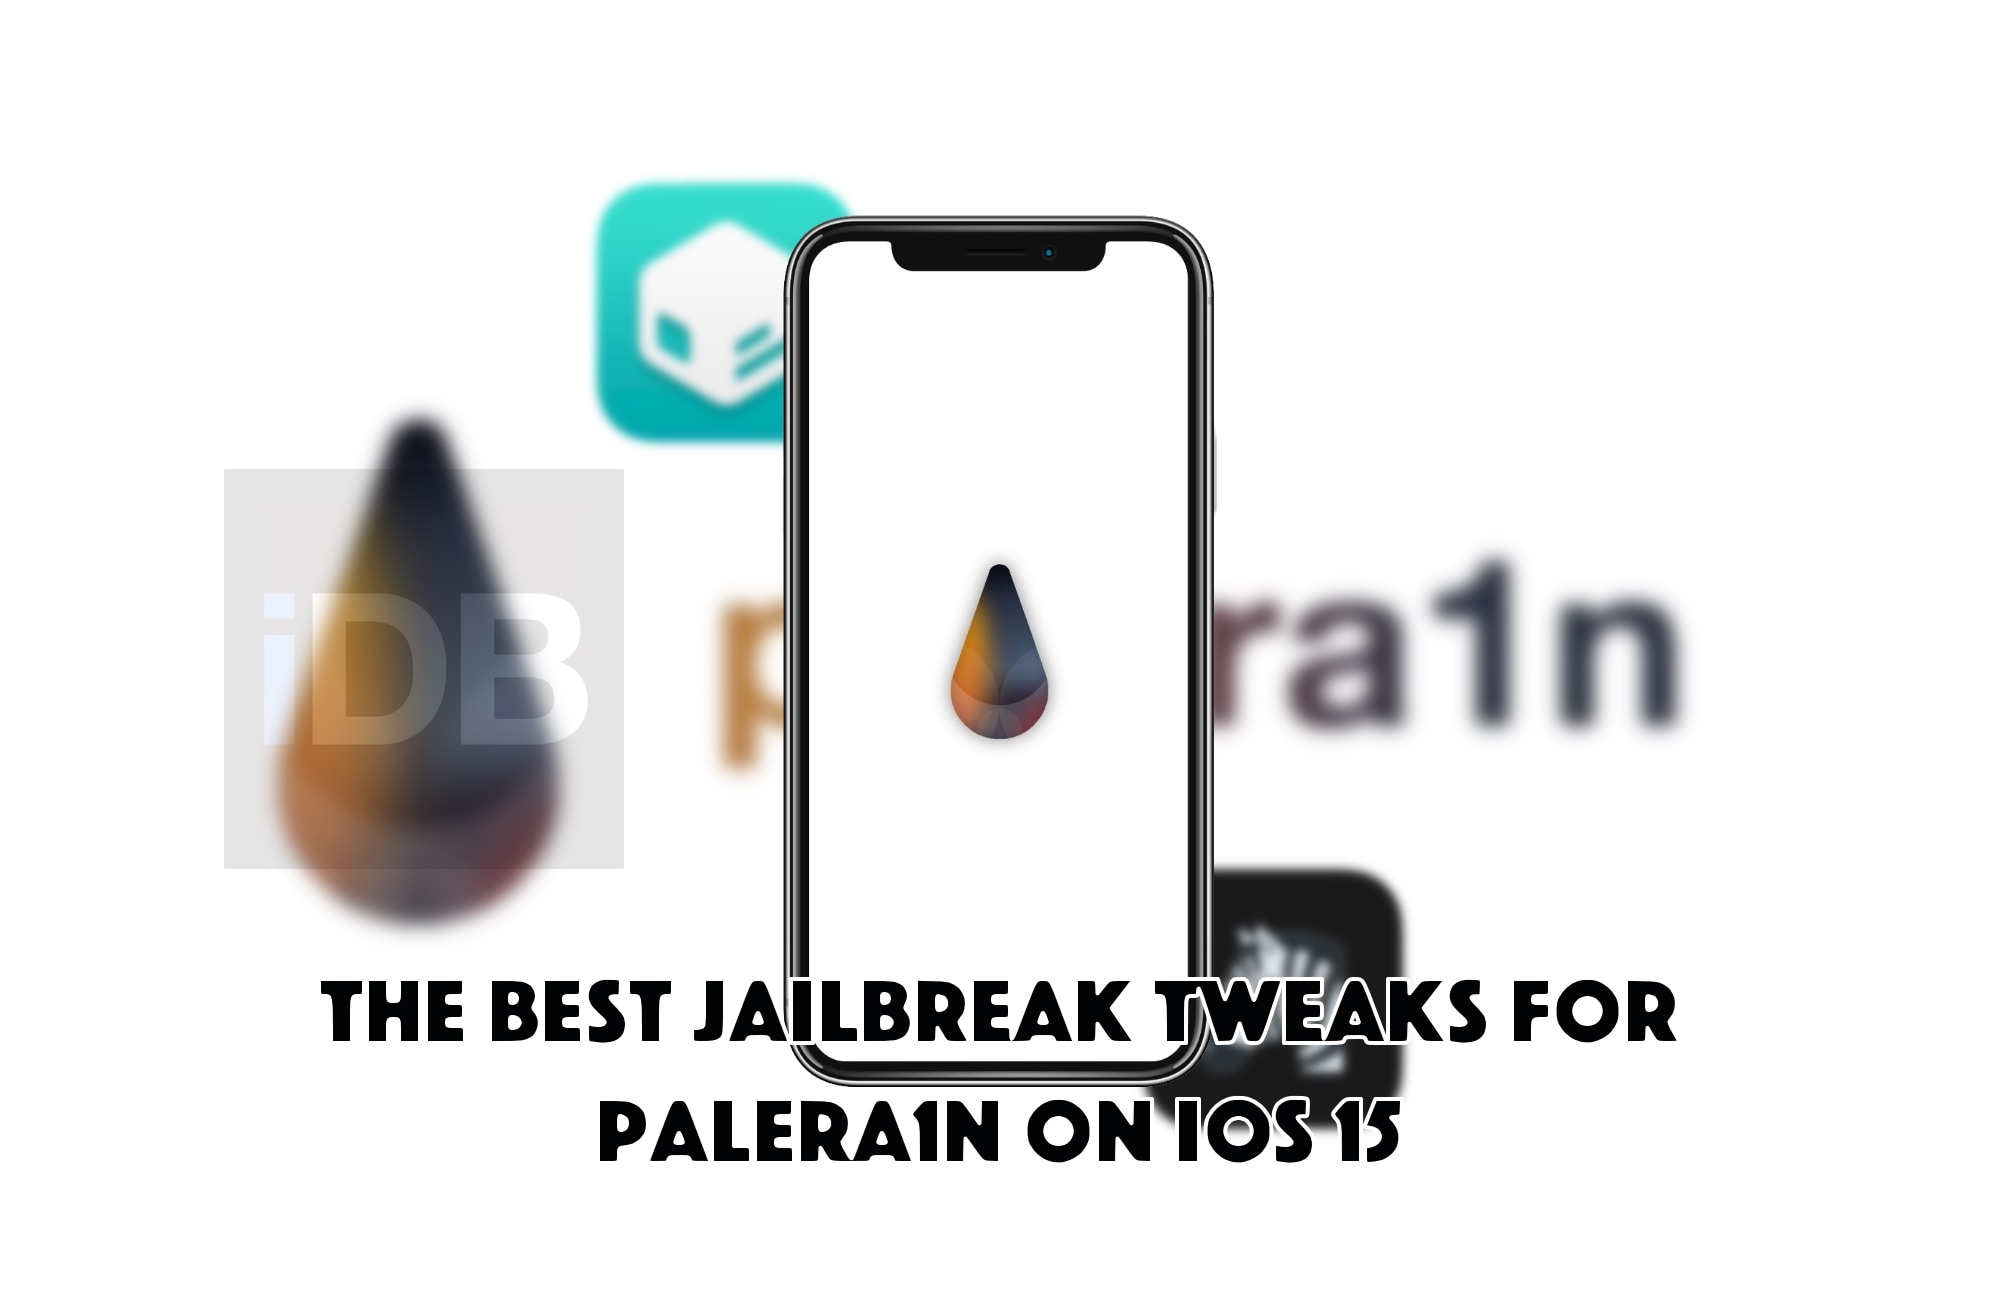 Best palera1n jailbreak tweaks on iOS 15.